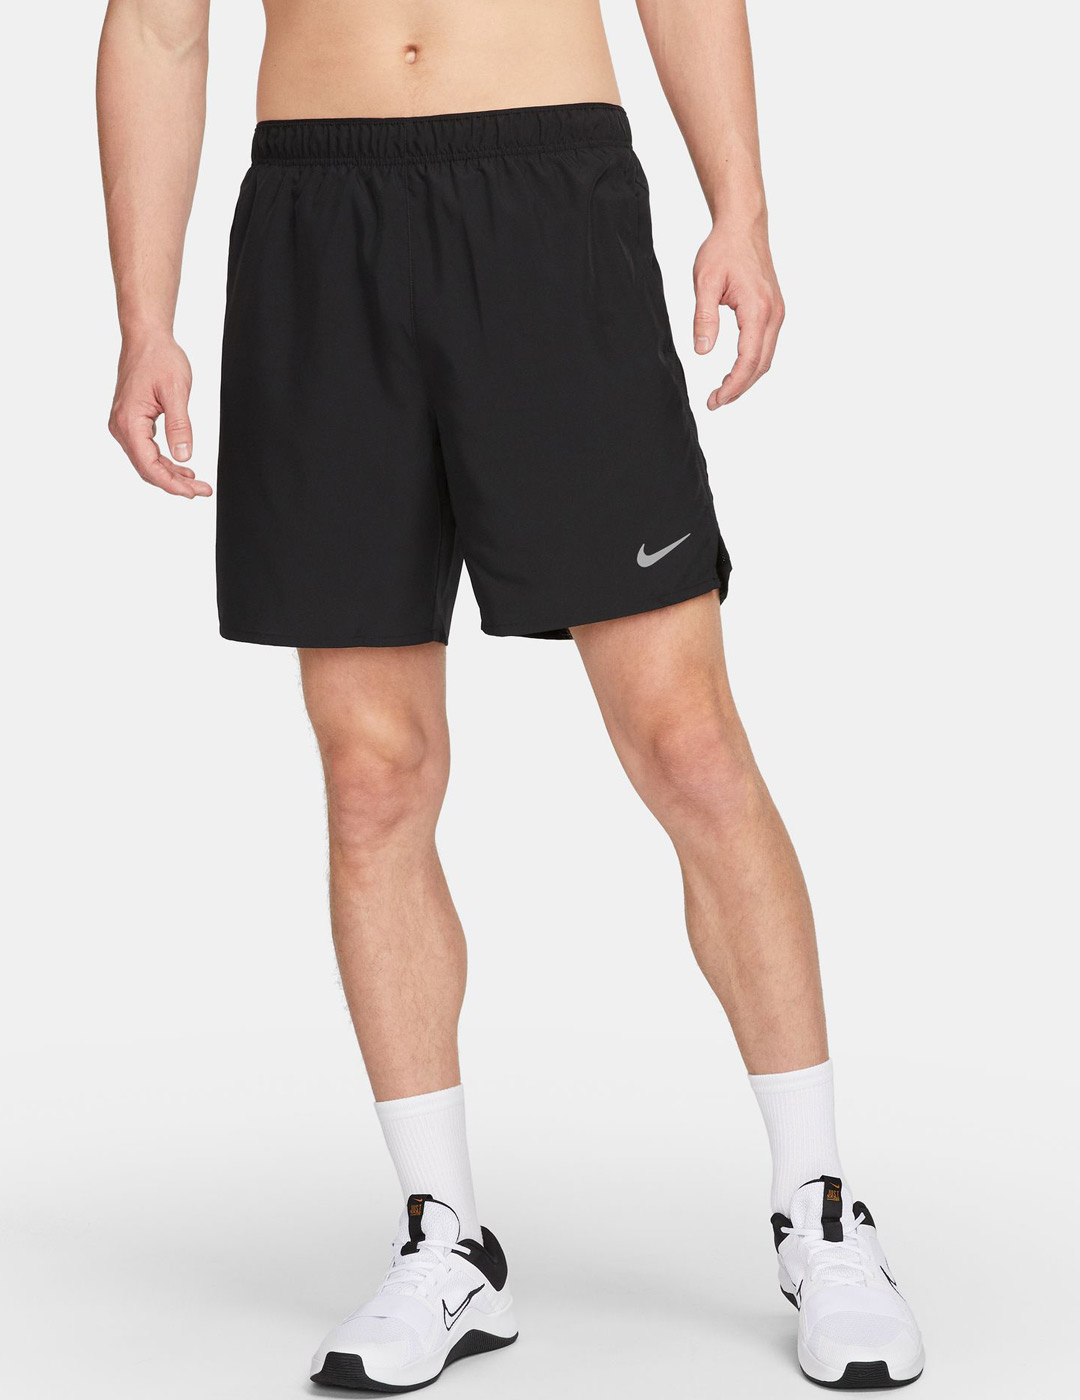 Pantalones cortos de deporte para hombre